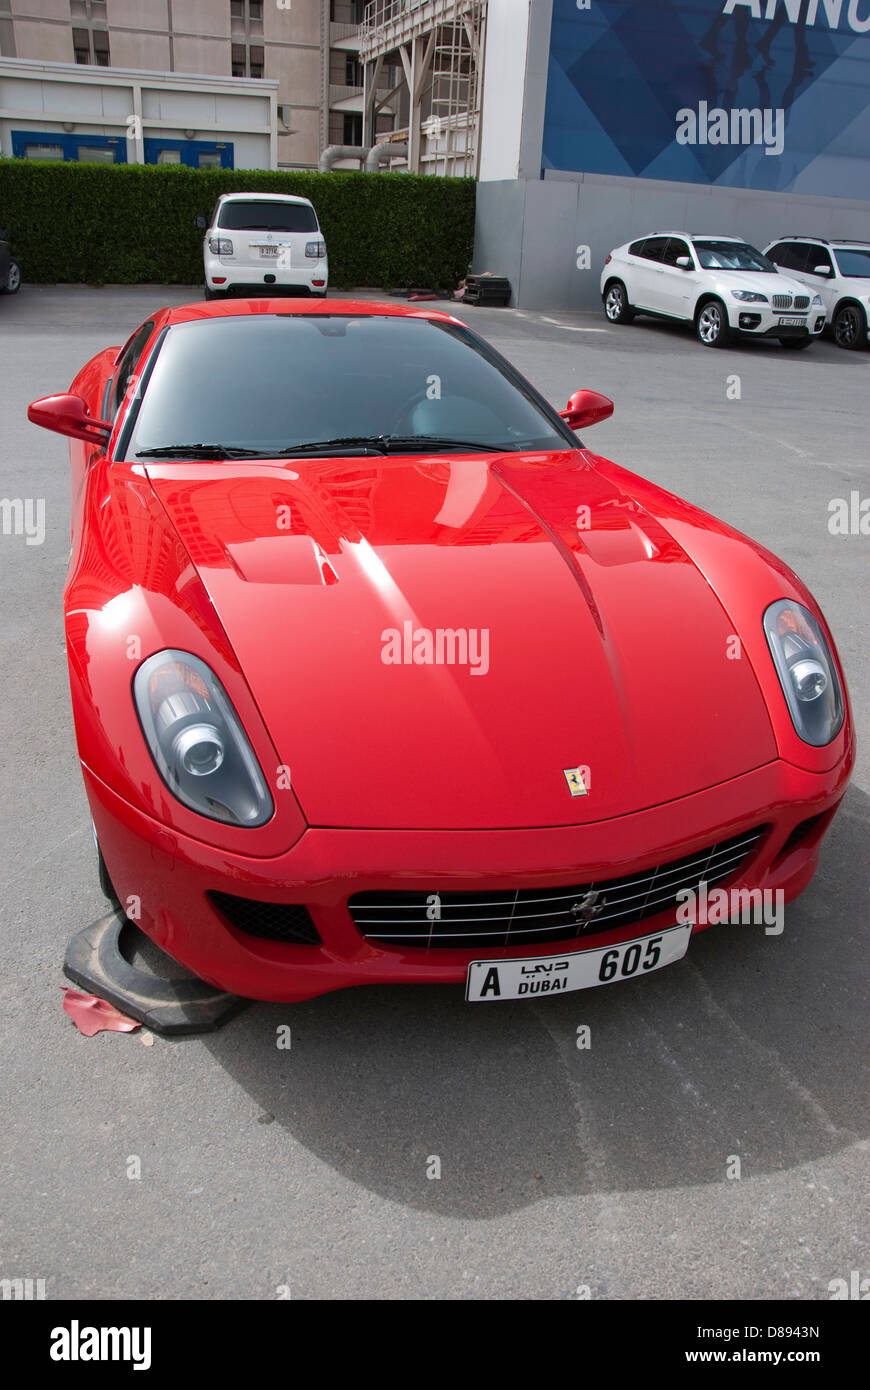 Bright Red Ferrari 599 GTB Fiorano Sports Car Stock Photo